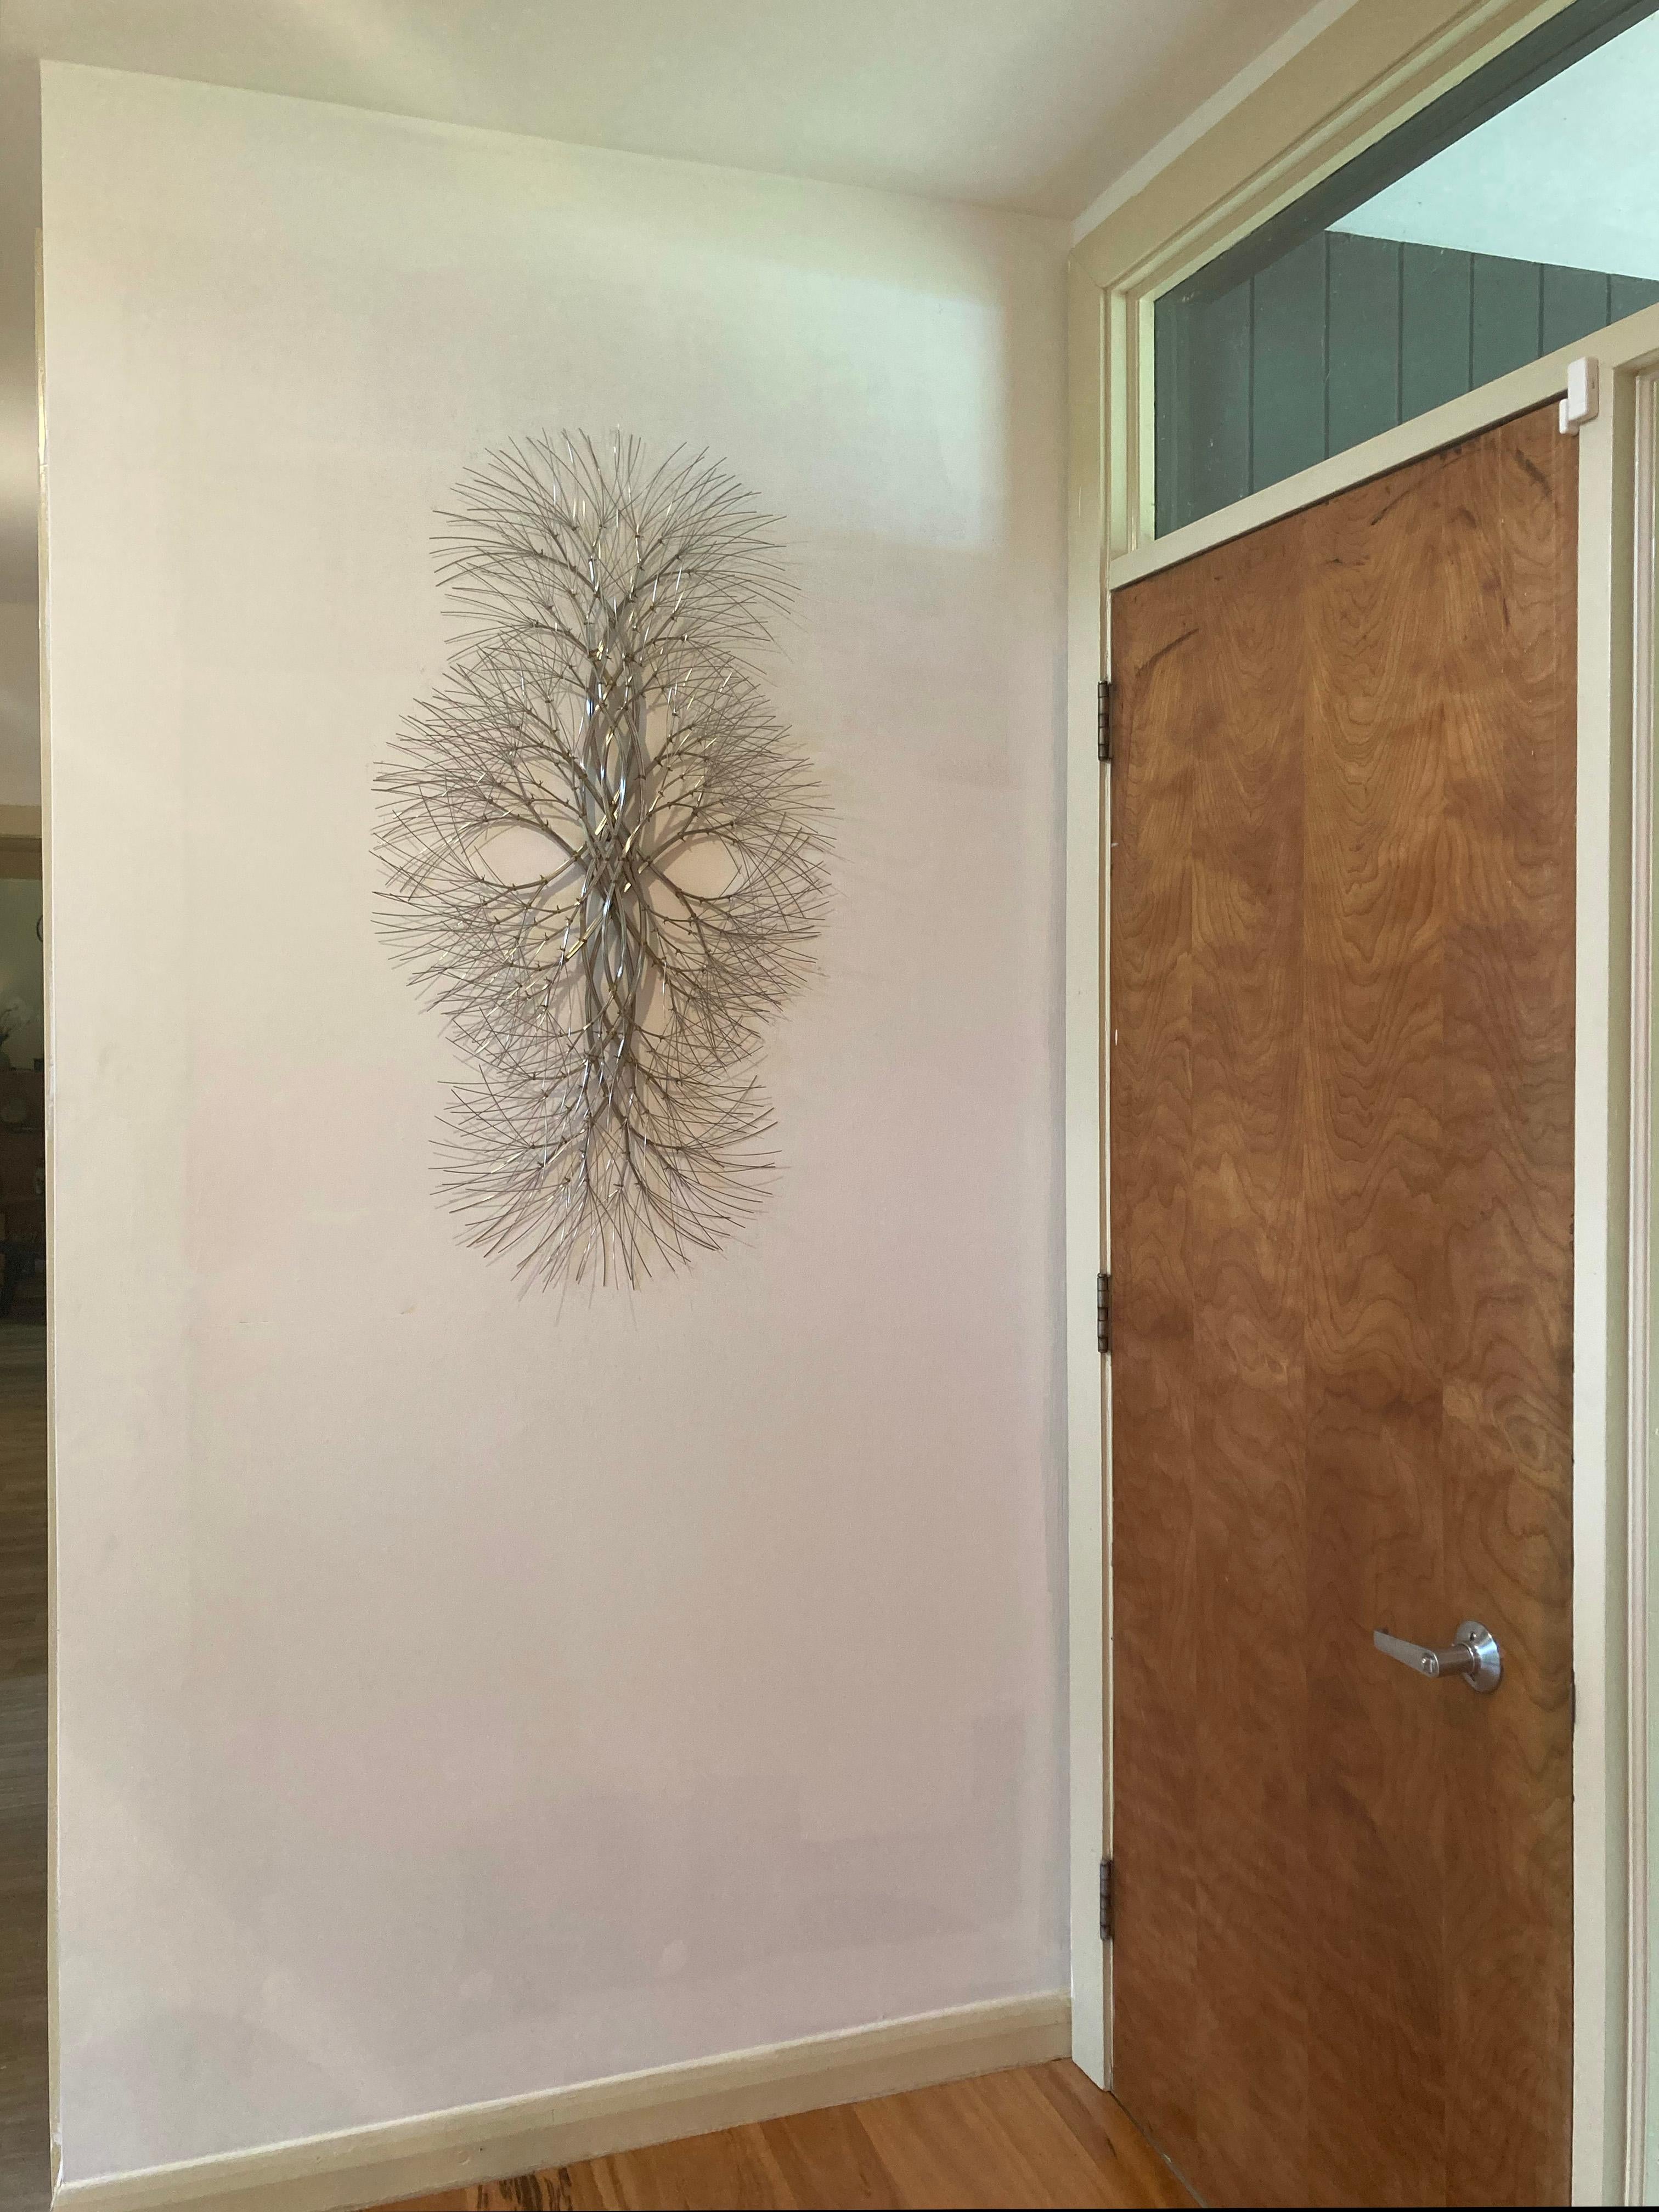 Diese Wandskulptur ist eine Studie über natürliche Formen, Reflexion und Bewegung. Von der Künstlerin Kue King. 

Suchen Sie nach 